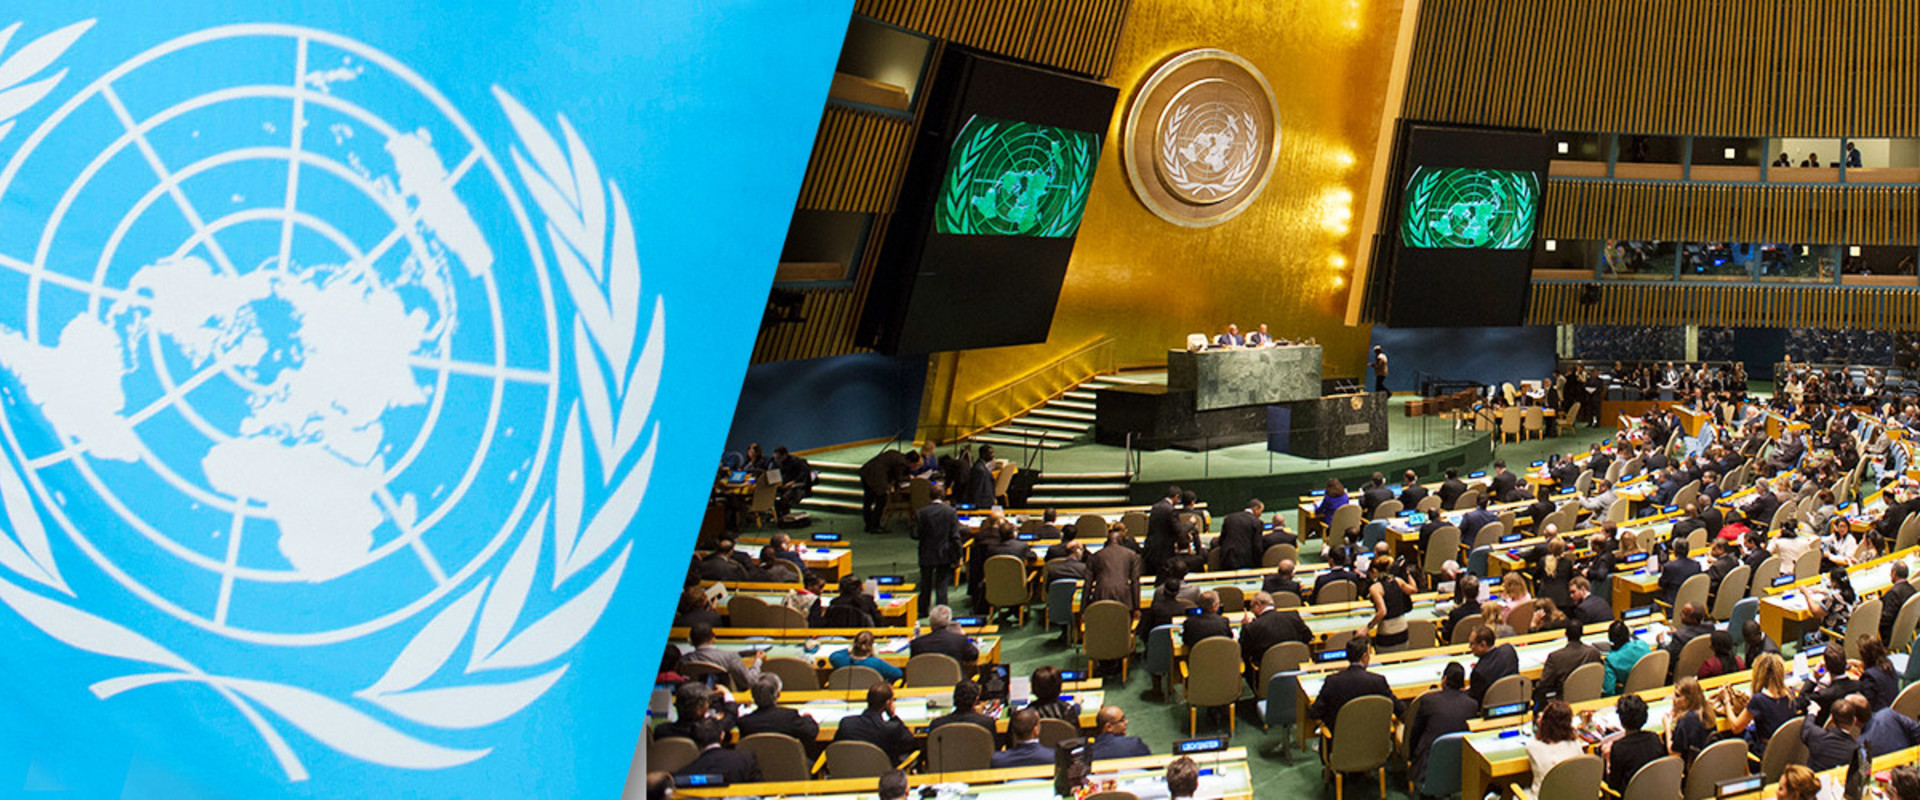 Оон 1991. Генеральная Ассамблея и совет безопасности ООН. Международная конференция ООН В 1994 В Каире. Генеральная Ассамблея ООН 1990 год. Генеральная Ассамблея ООН 1970.